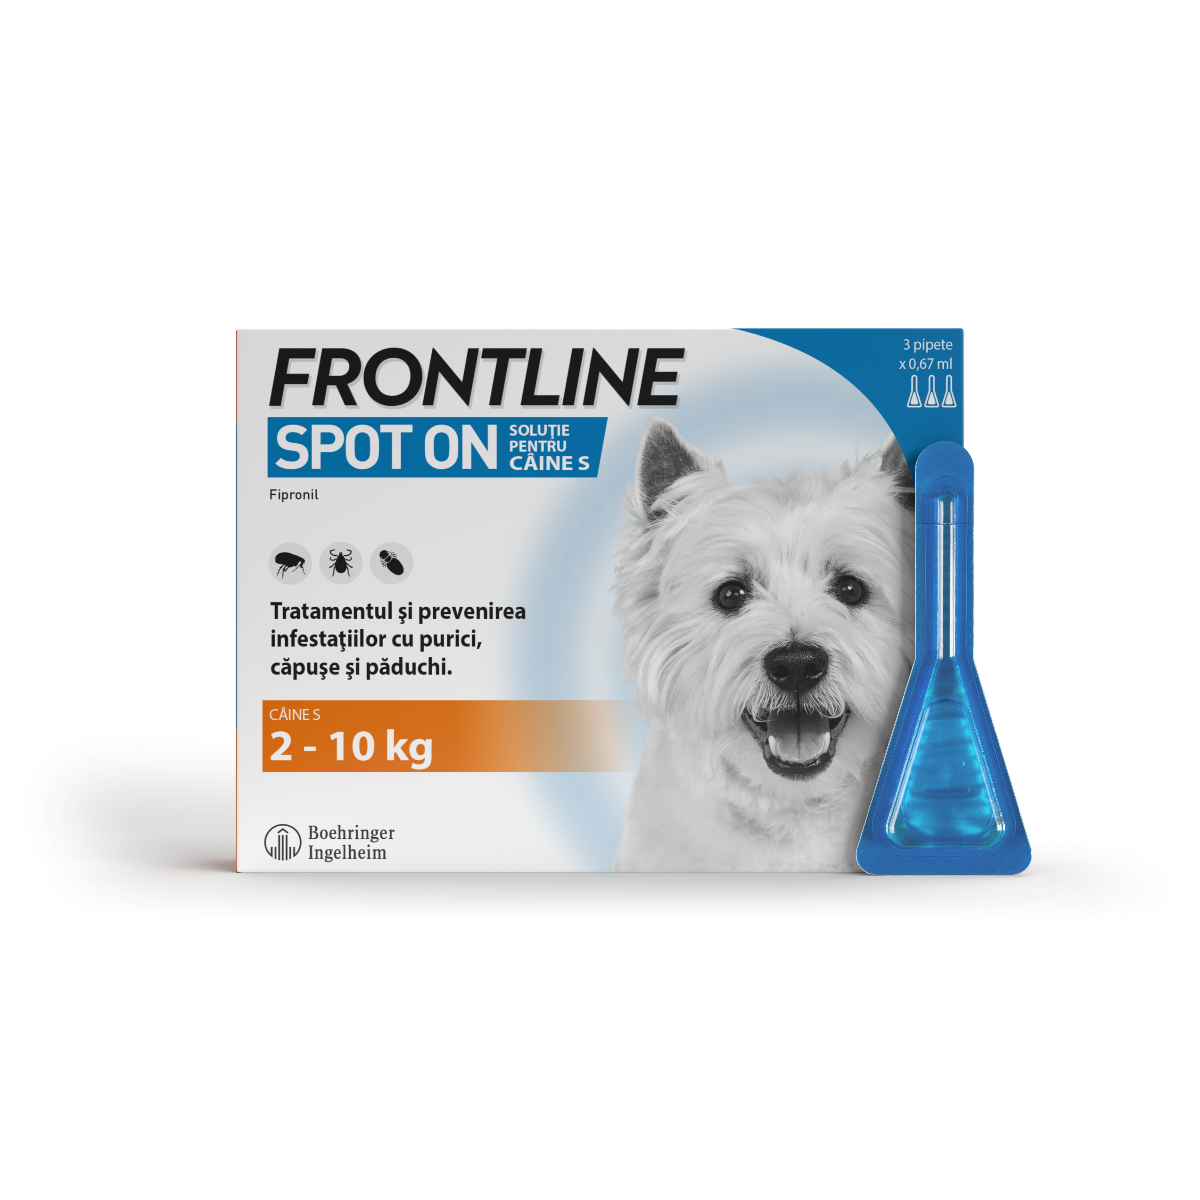 Frontline Spot On S, 2-10 kg, 3 pipete, Frontline